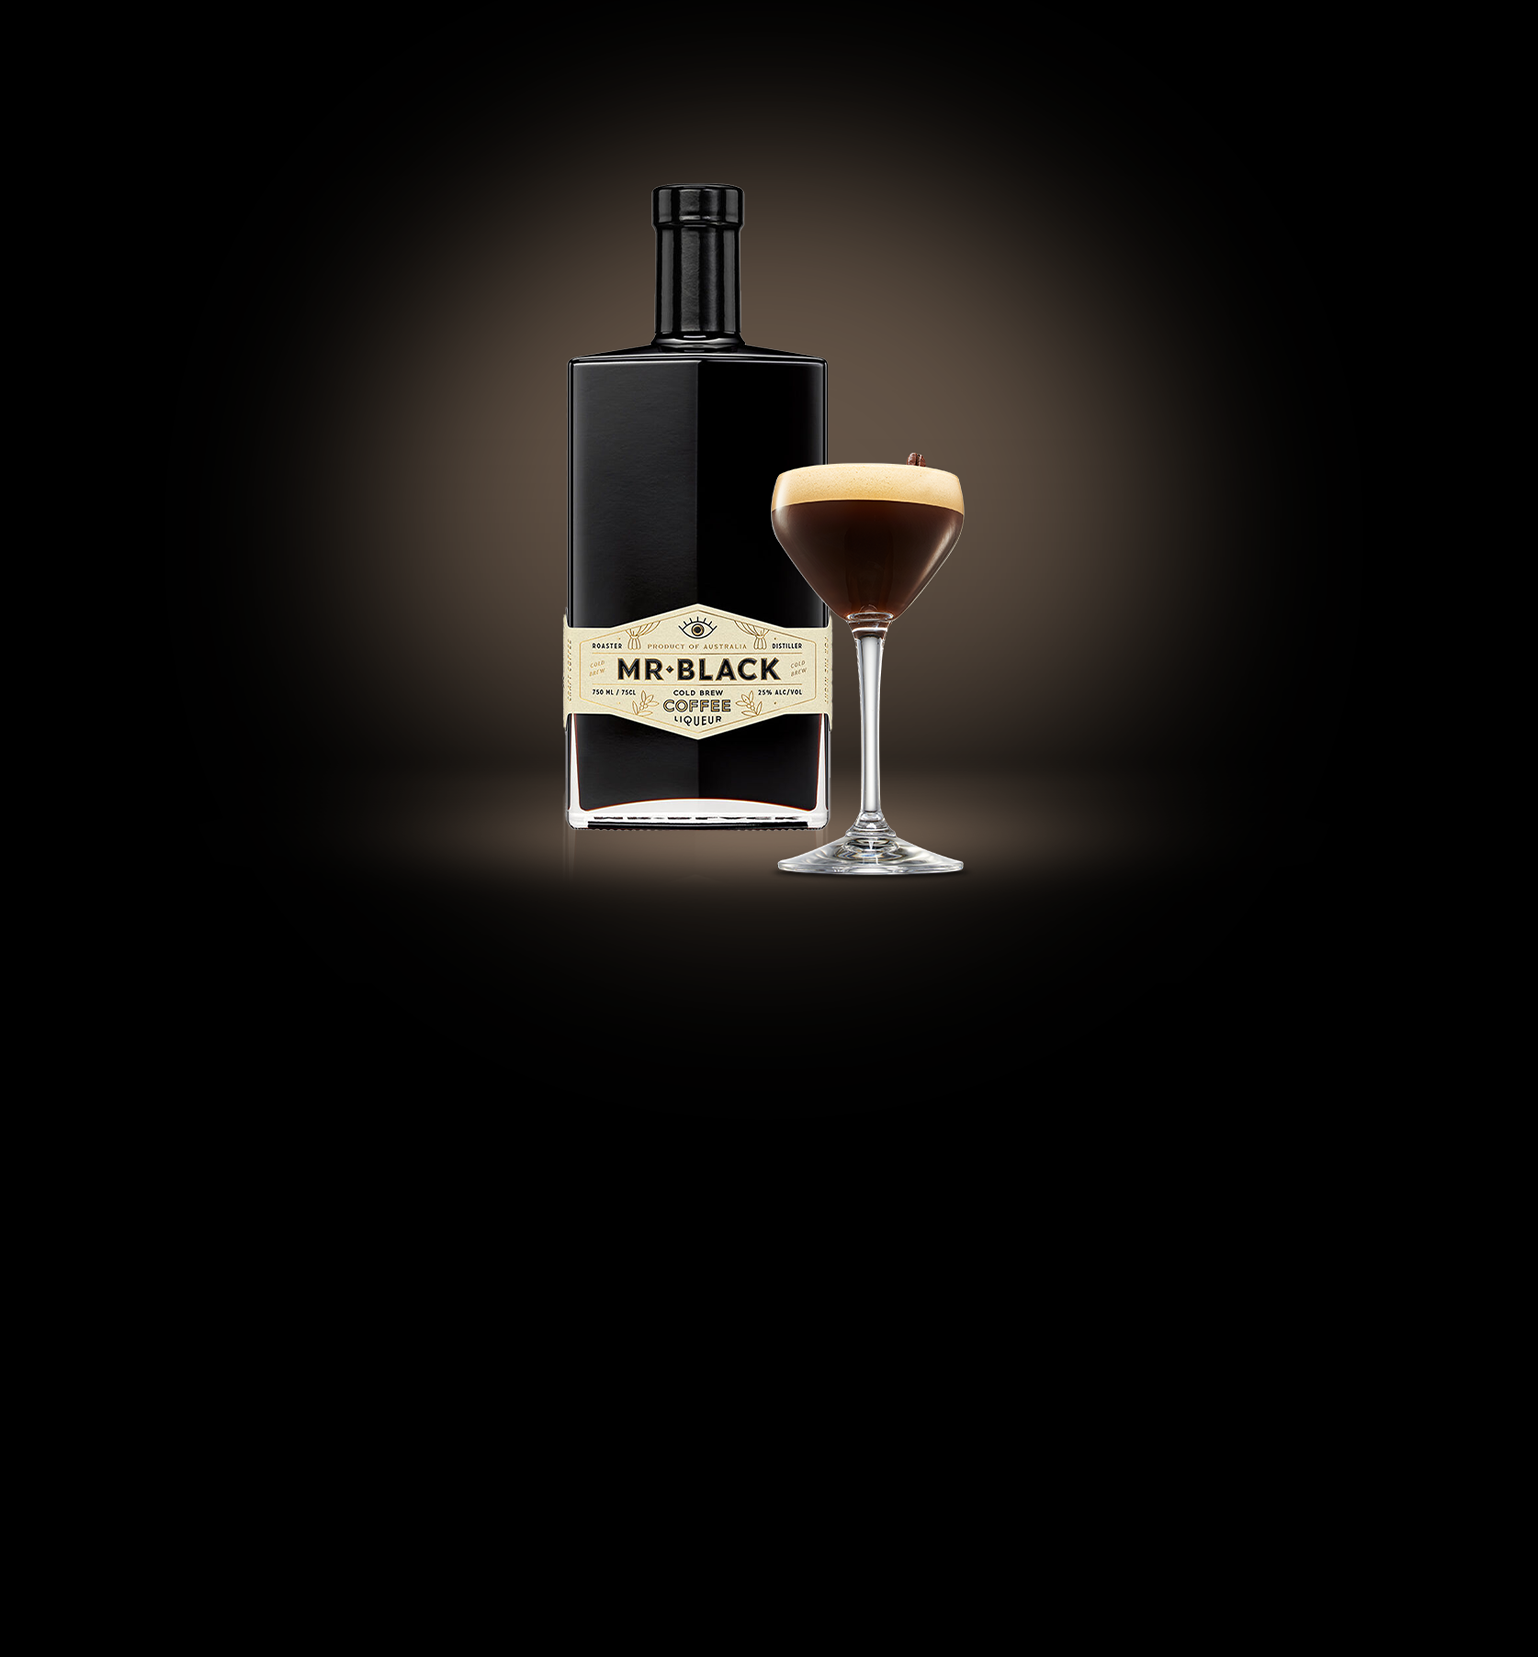 Mr Black x Ketel One Espresso Martini Cocktail